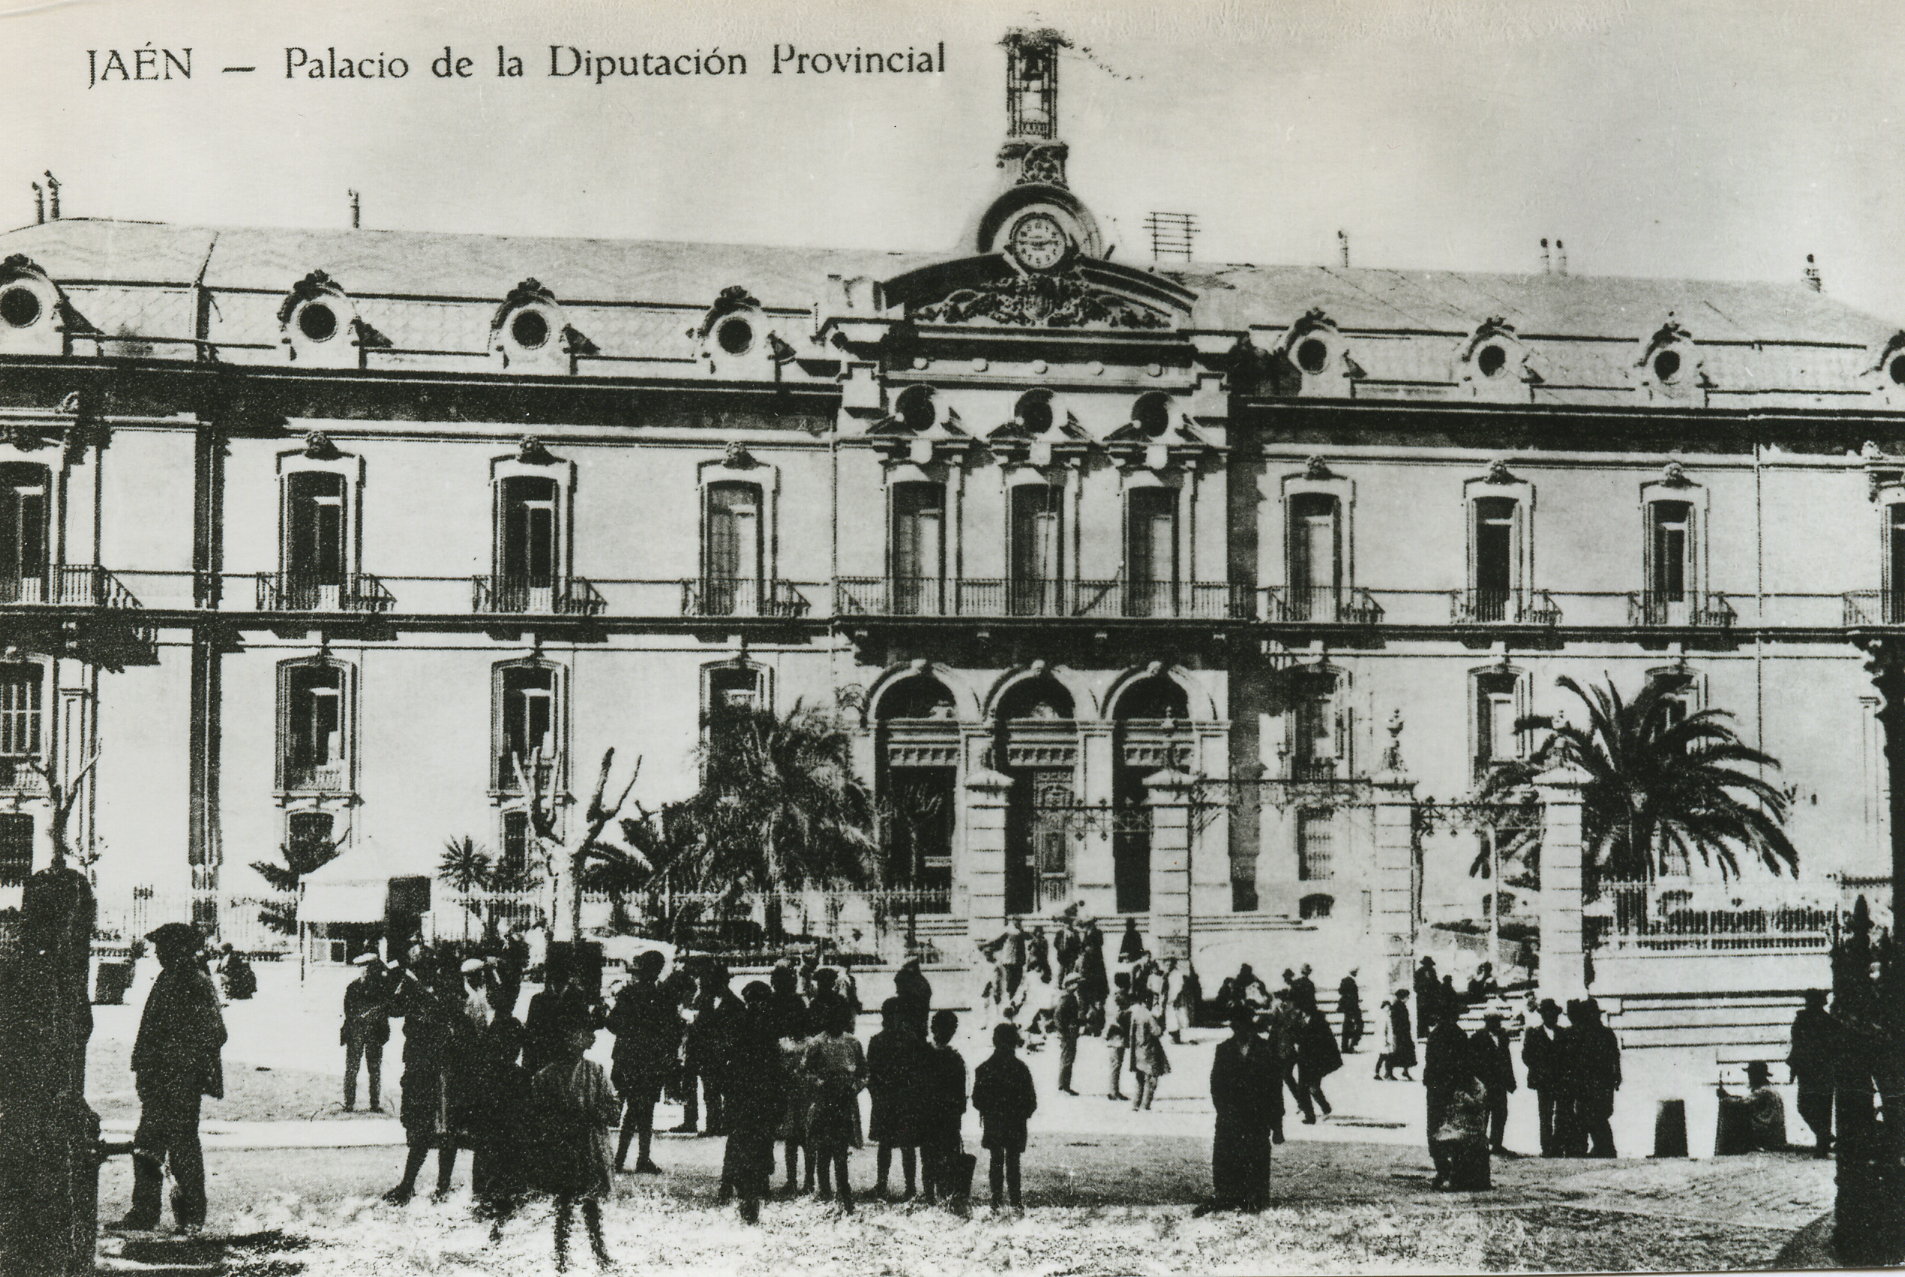 Fachada del Palacio de la Diputación Provincial. Década de 1920.